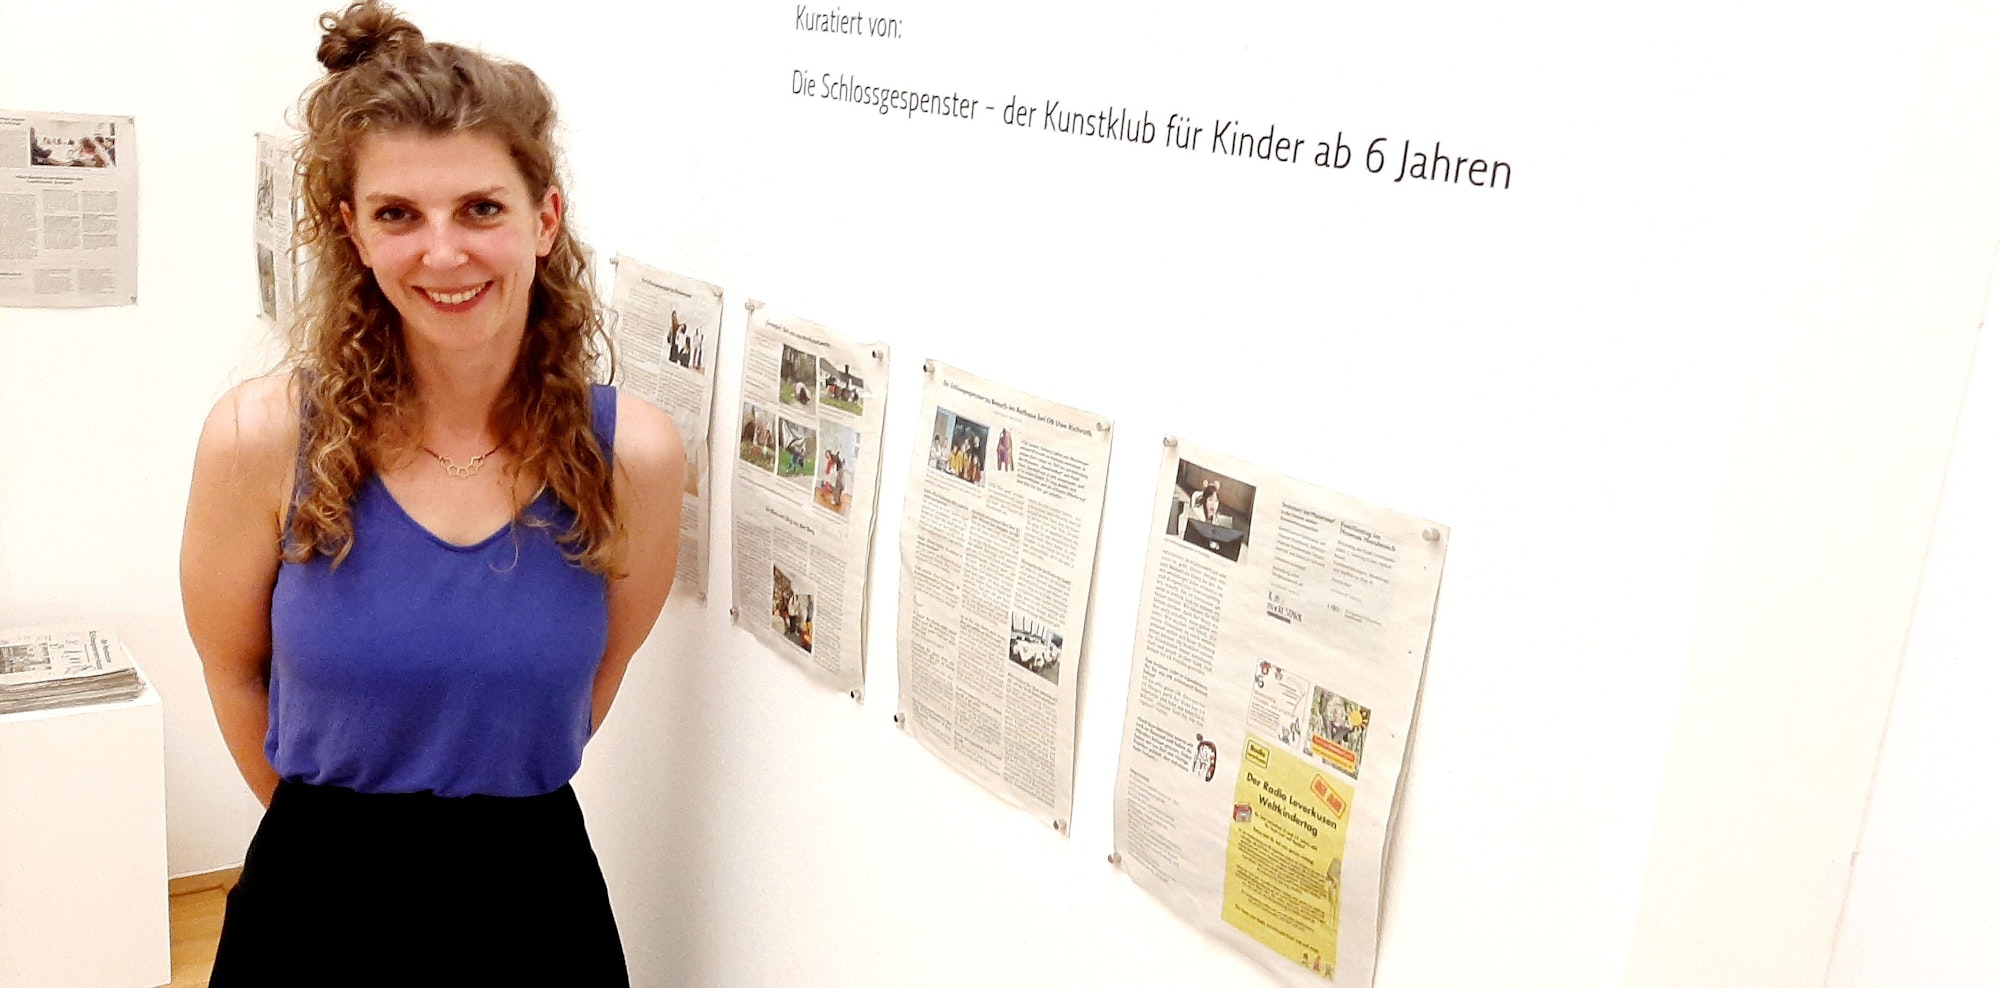 Lucia Riemenschnitter vor der Kunstzeitung ihrer „Schlossgespenster“.